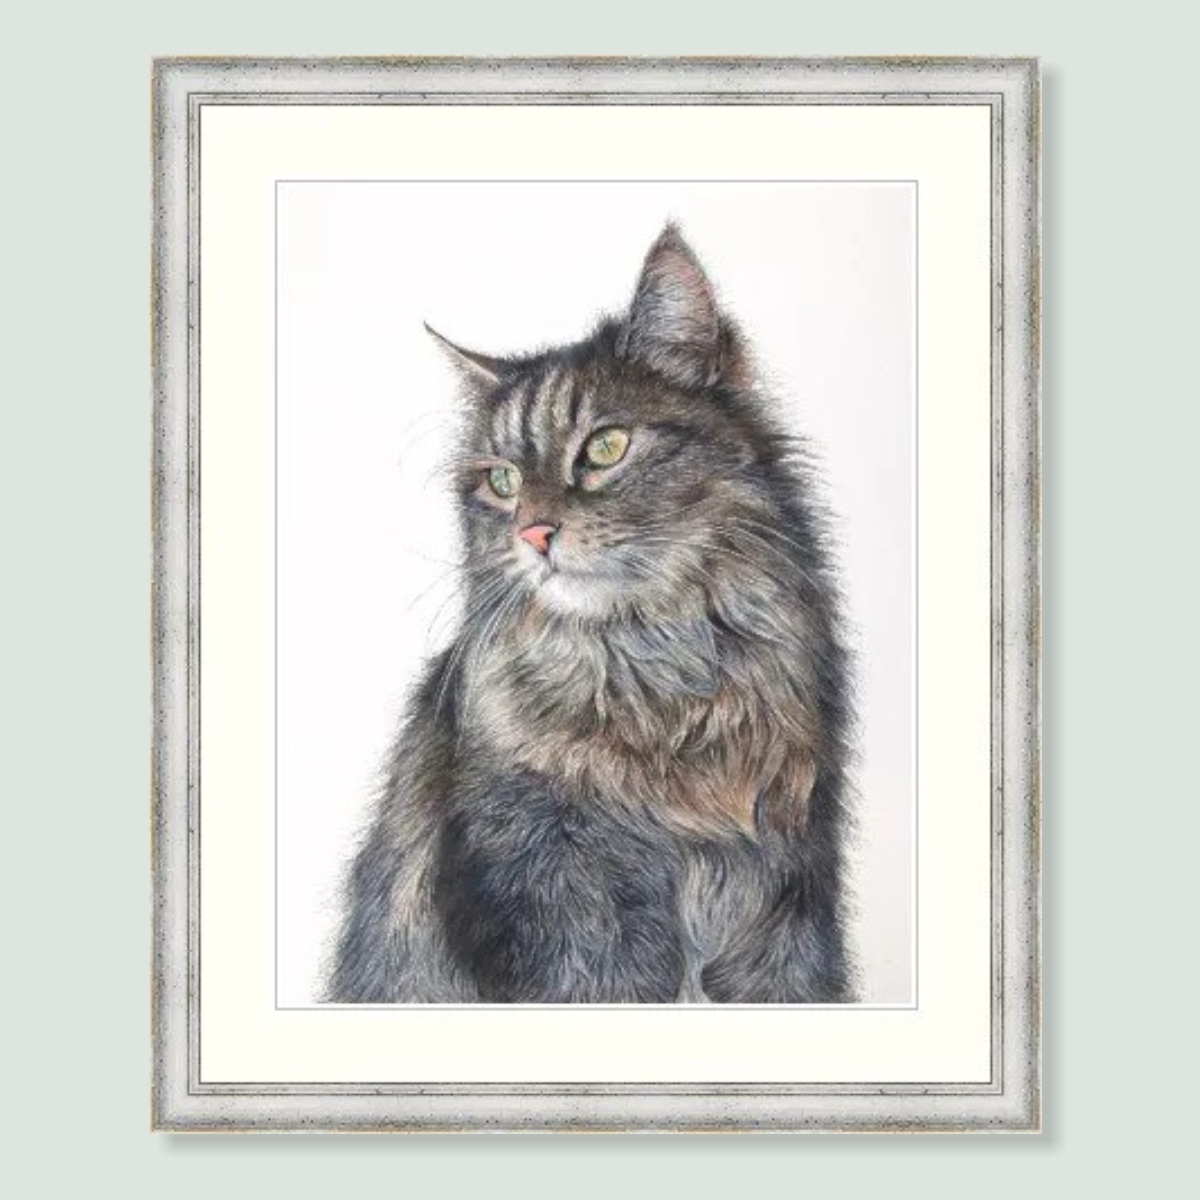 Charlie - coloured pencil cat portrait by pet artist Angie.